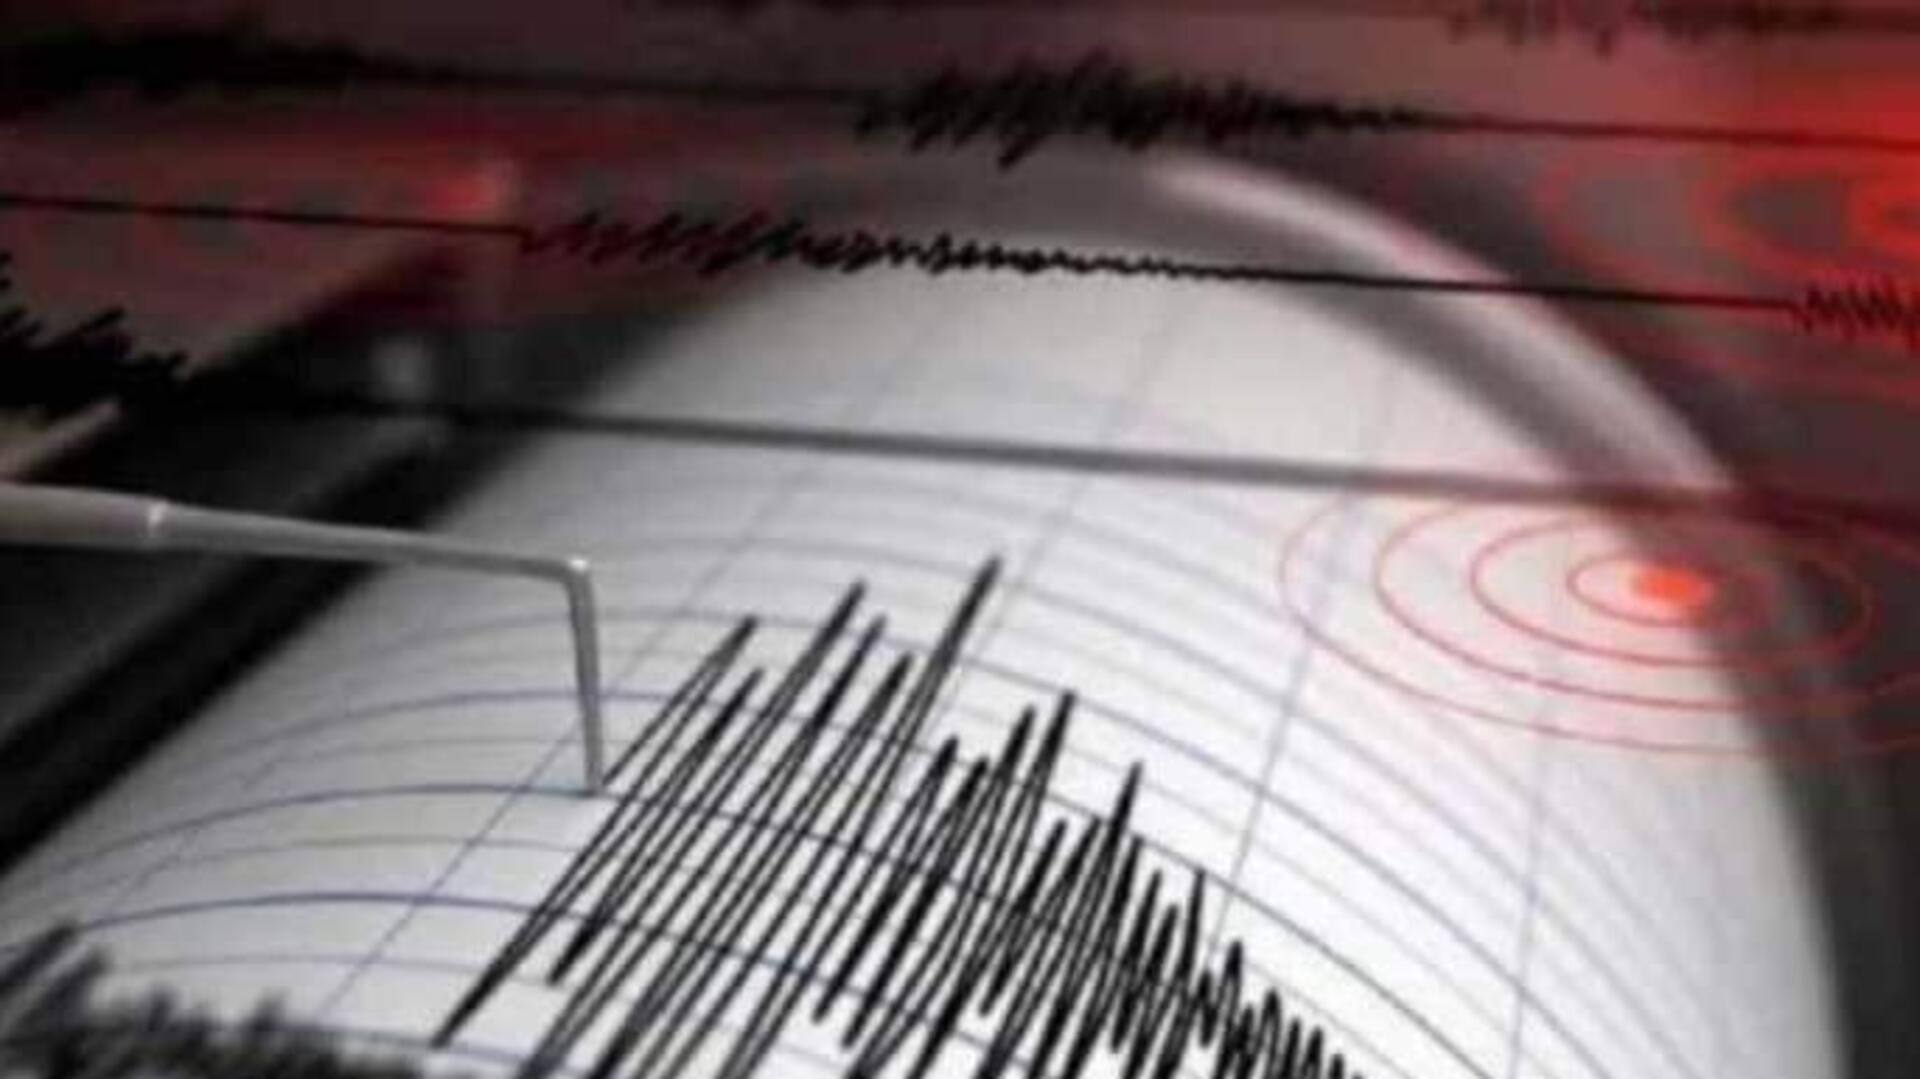 Earthquake : లడఖ్ ప్రాంతంలో 5.2 తీవ్రతతో భూకంపం.. భయాందోళనలో ప్రజలు 